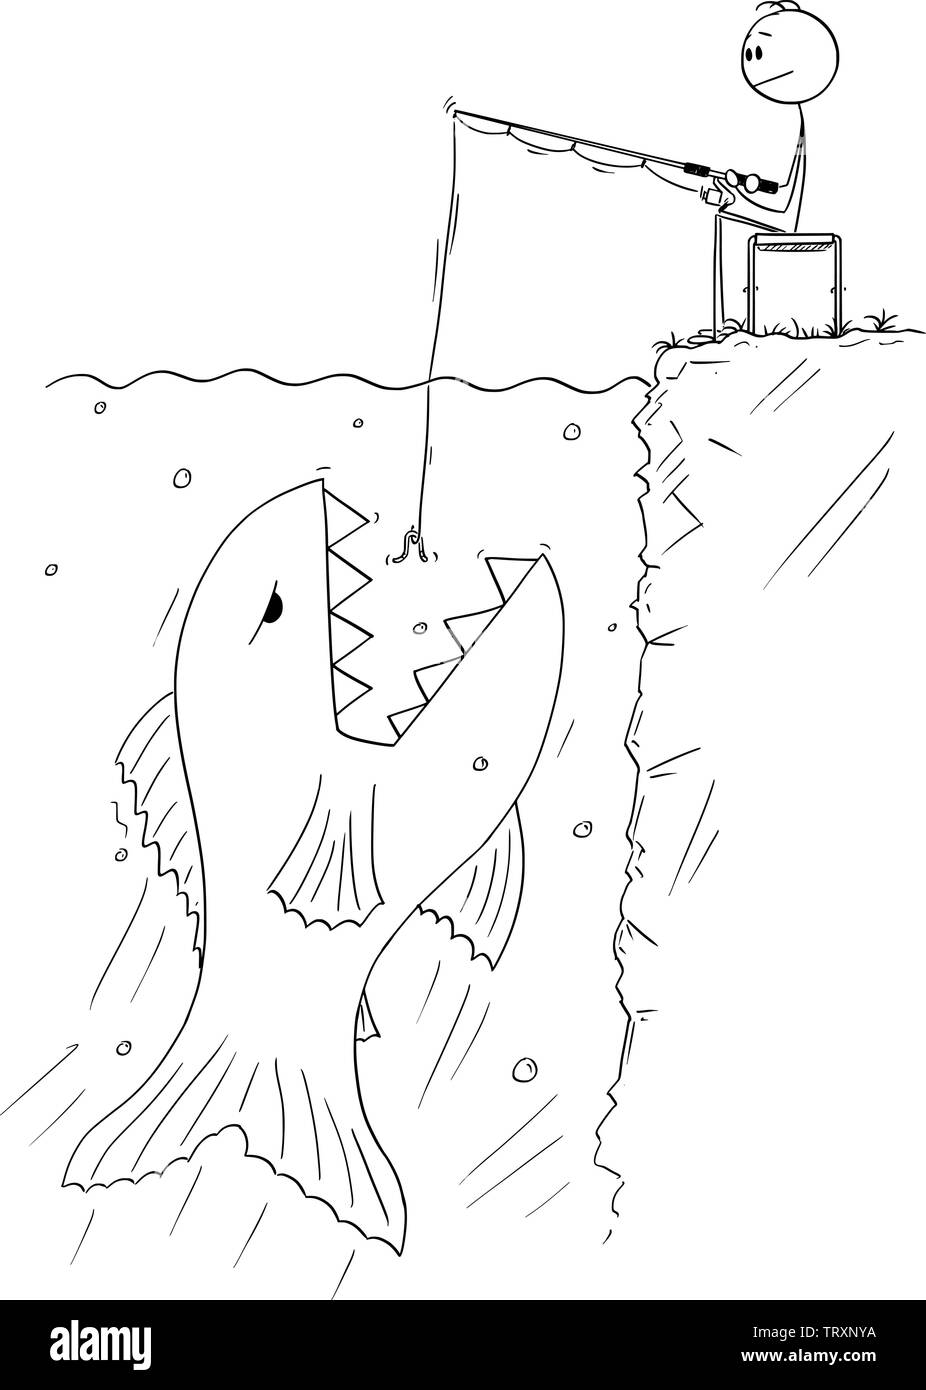 Vektor cartoon Strichmännchen Zeichnen konzeptionelle Darstellung der Mann ruhig in der Nähe von Wasser sitzen und Angeln oder fischen während der riesigen und gefährlichen Fisch schwimmt, den Köder zu essen. Stock Vektor